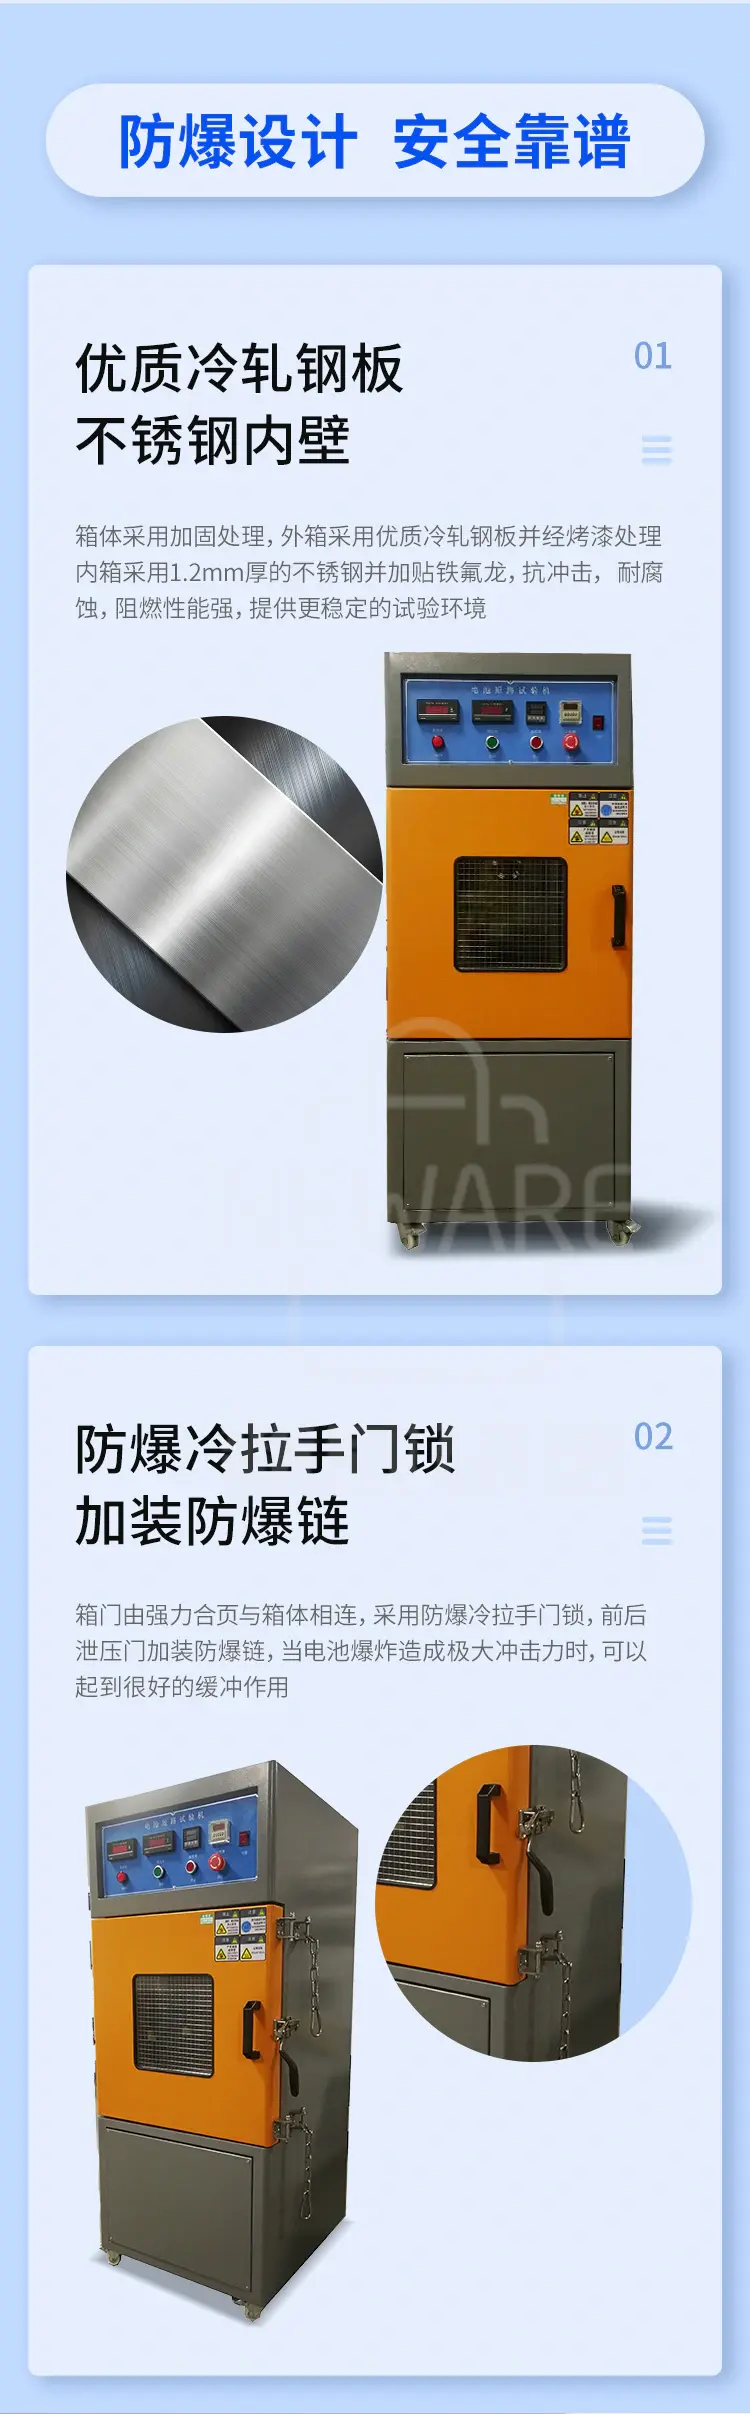 常温型电池短路试验机6002商品介绍2